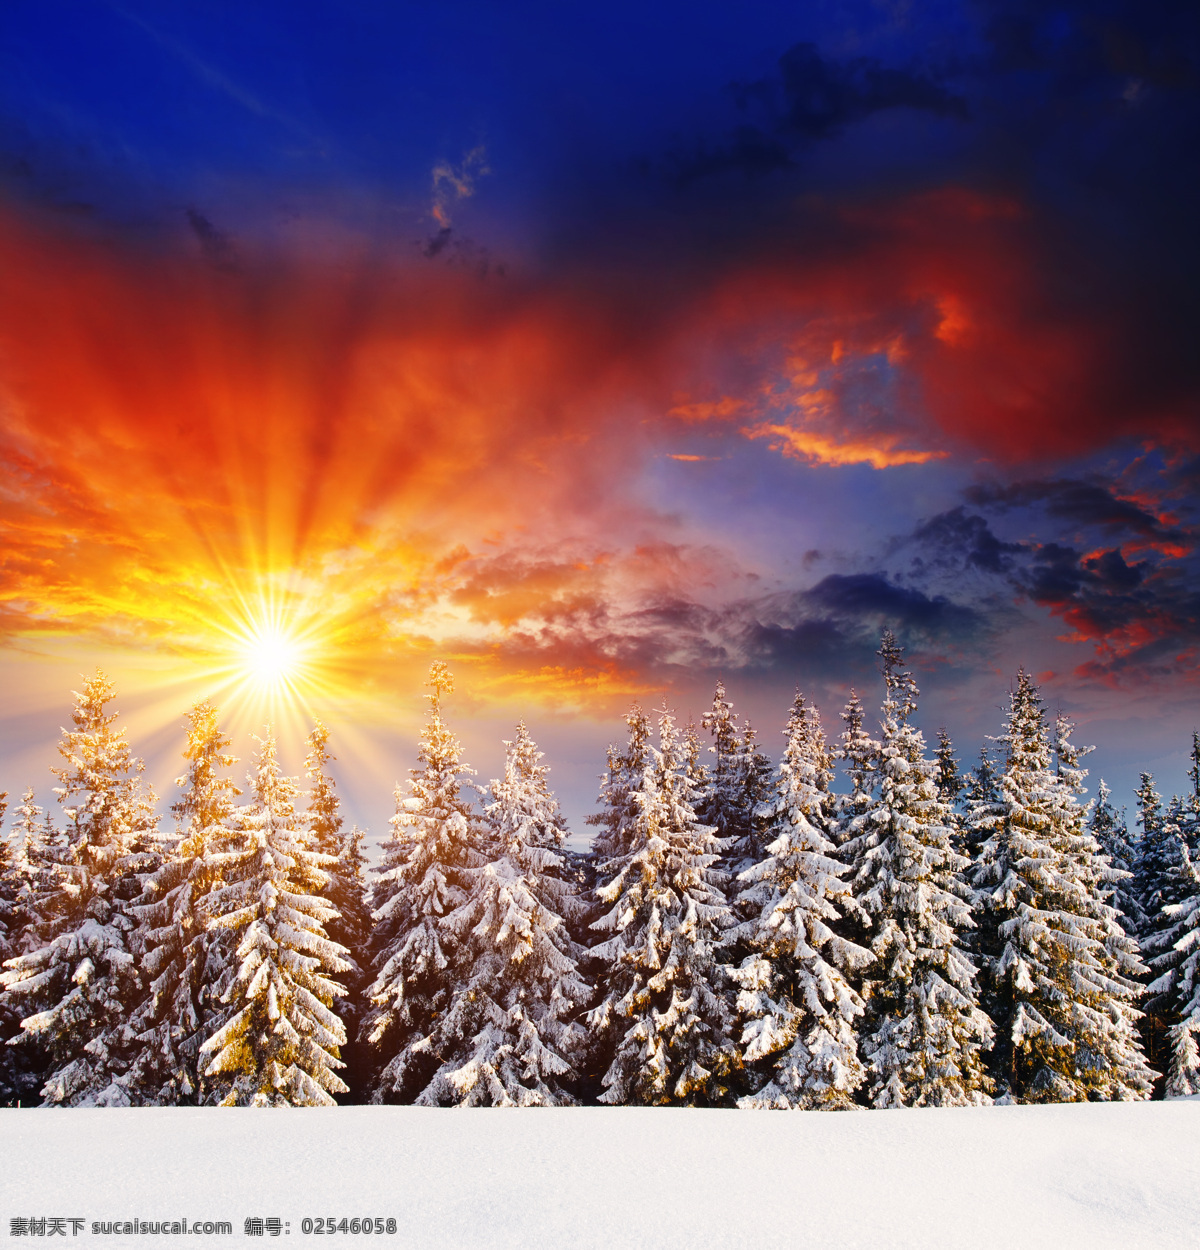 美丽 冬天 森林 雪景 黄昏美景 夕阳 冬天雪景 冬季风景 树林雪景 森林雪景 雪景图片 风景图片